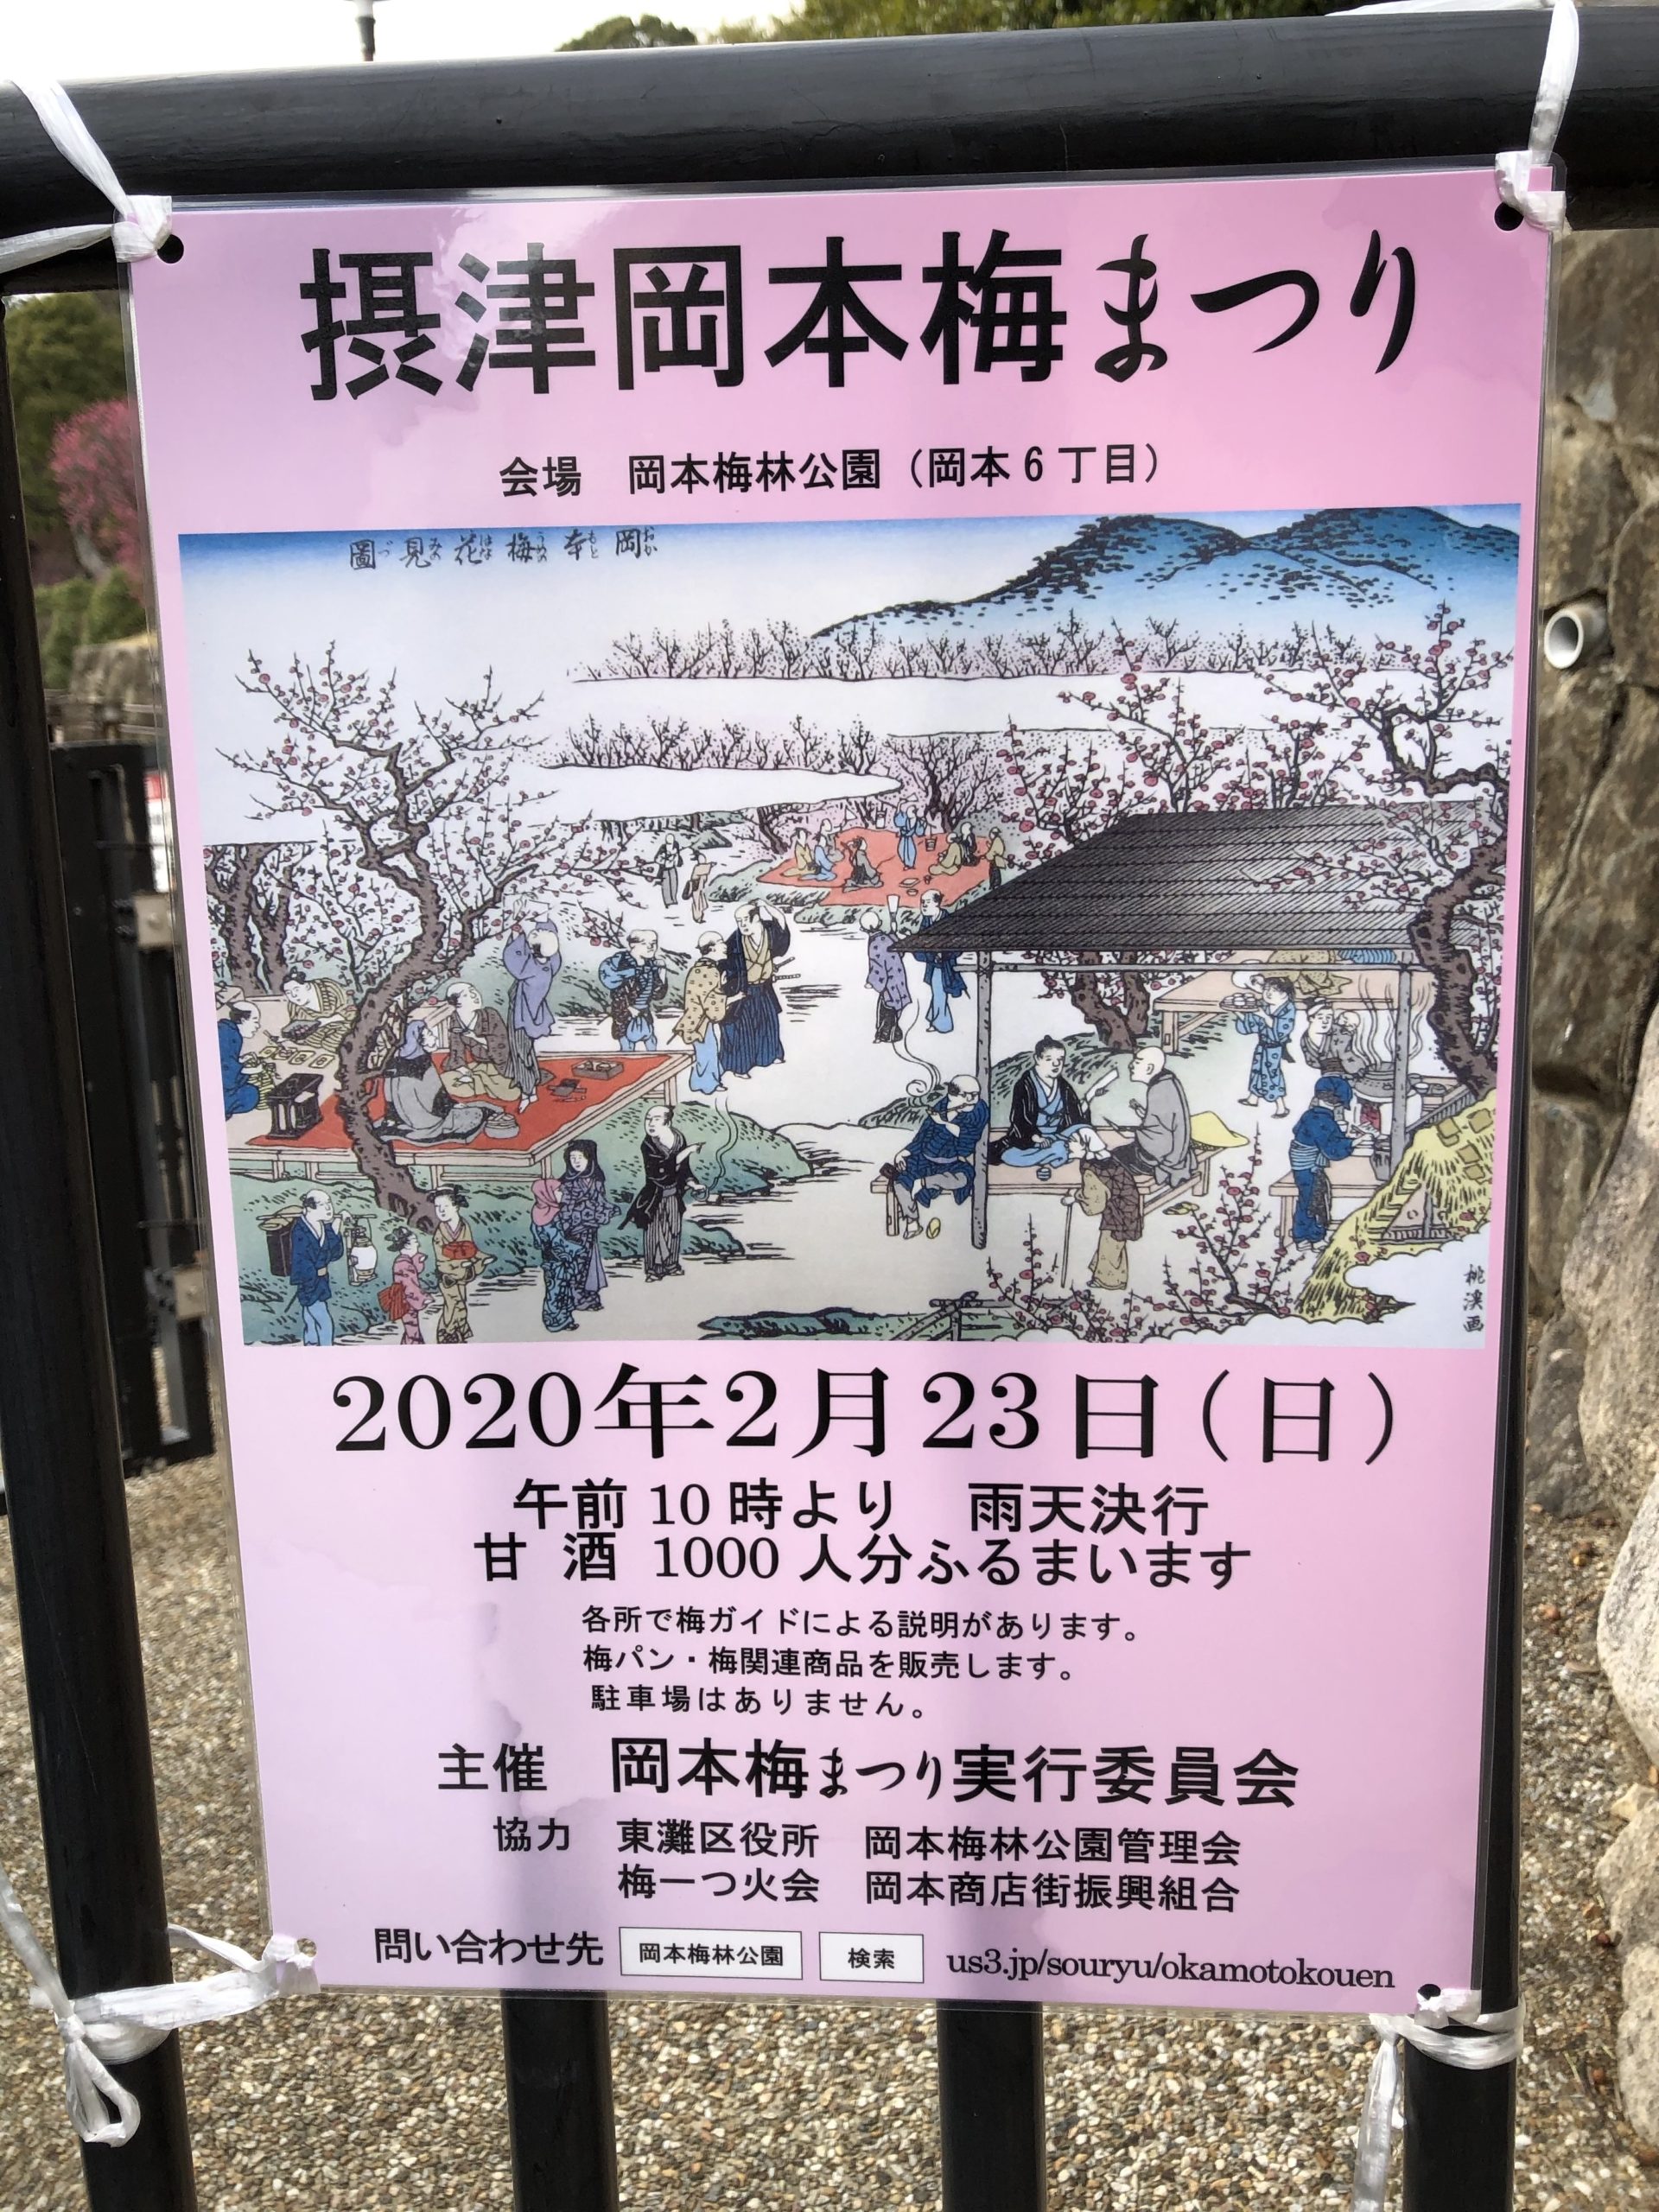 2月23日 日 岡本 梅林 公園 摂津岡本梅まつり開催 甘酒1 000人分 ひがしなだノート